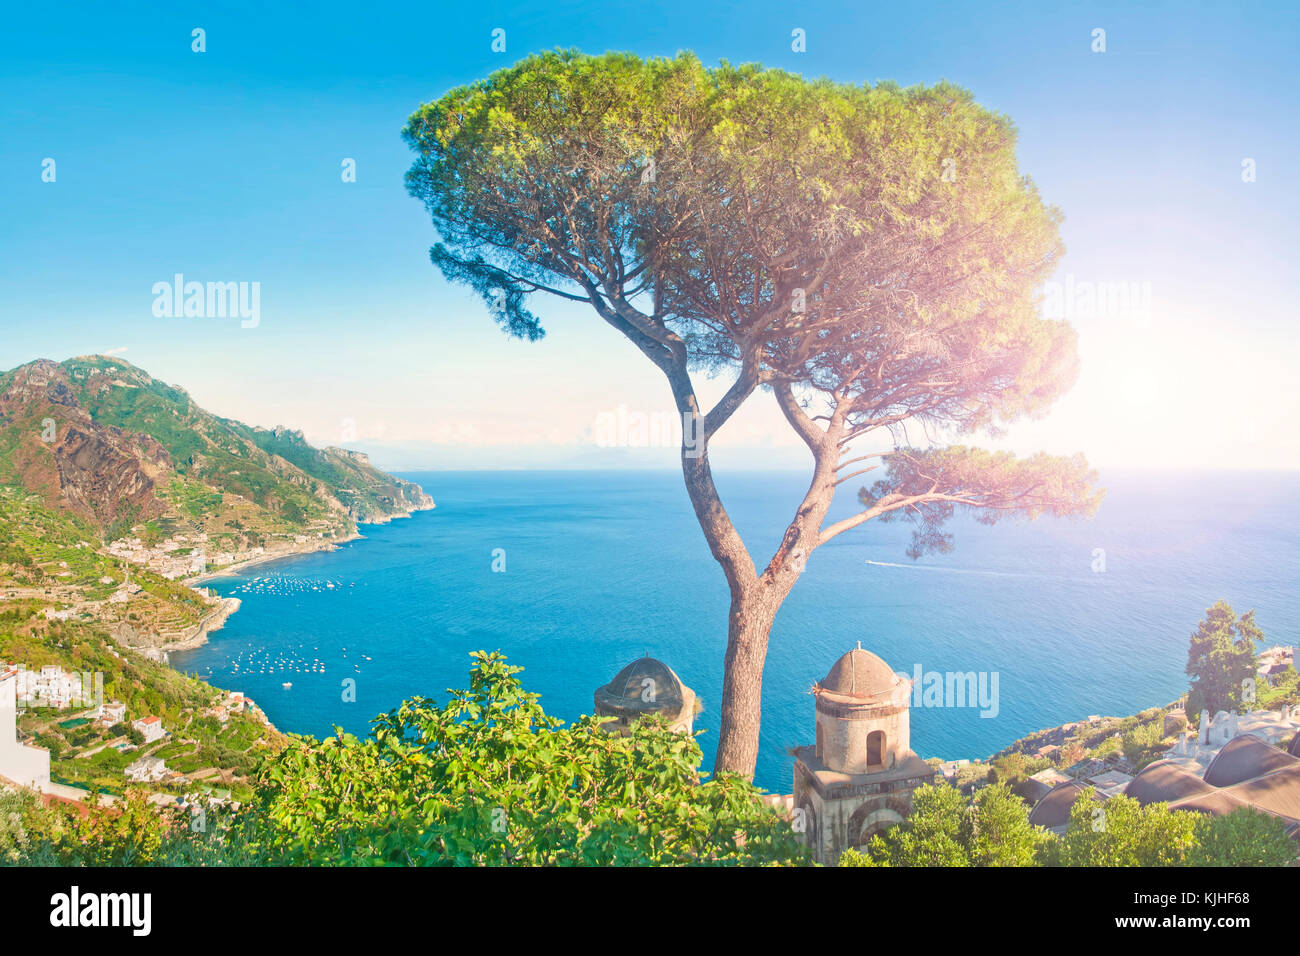 Image panoramique de la mer méditerranée et les montagnes de la villa Rufolo au coucher du soleil, la Côte d'Amalfi, Italie Banque D'Images